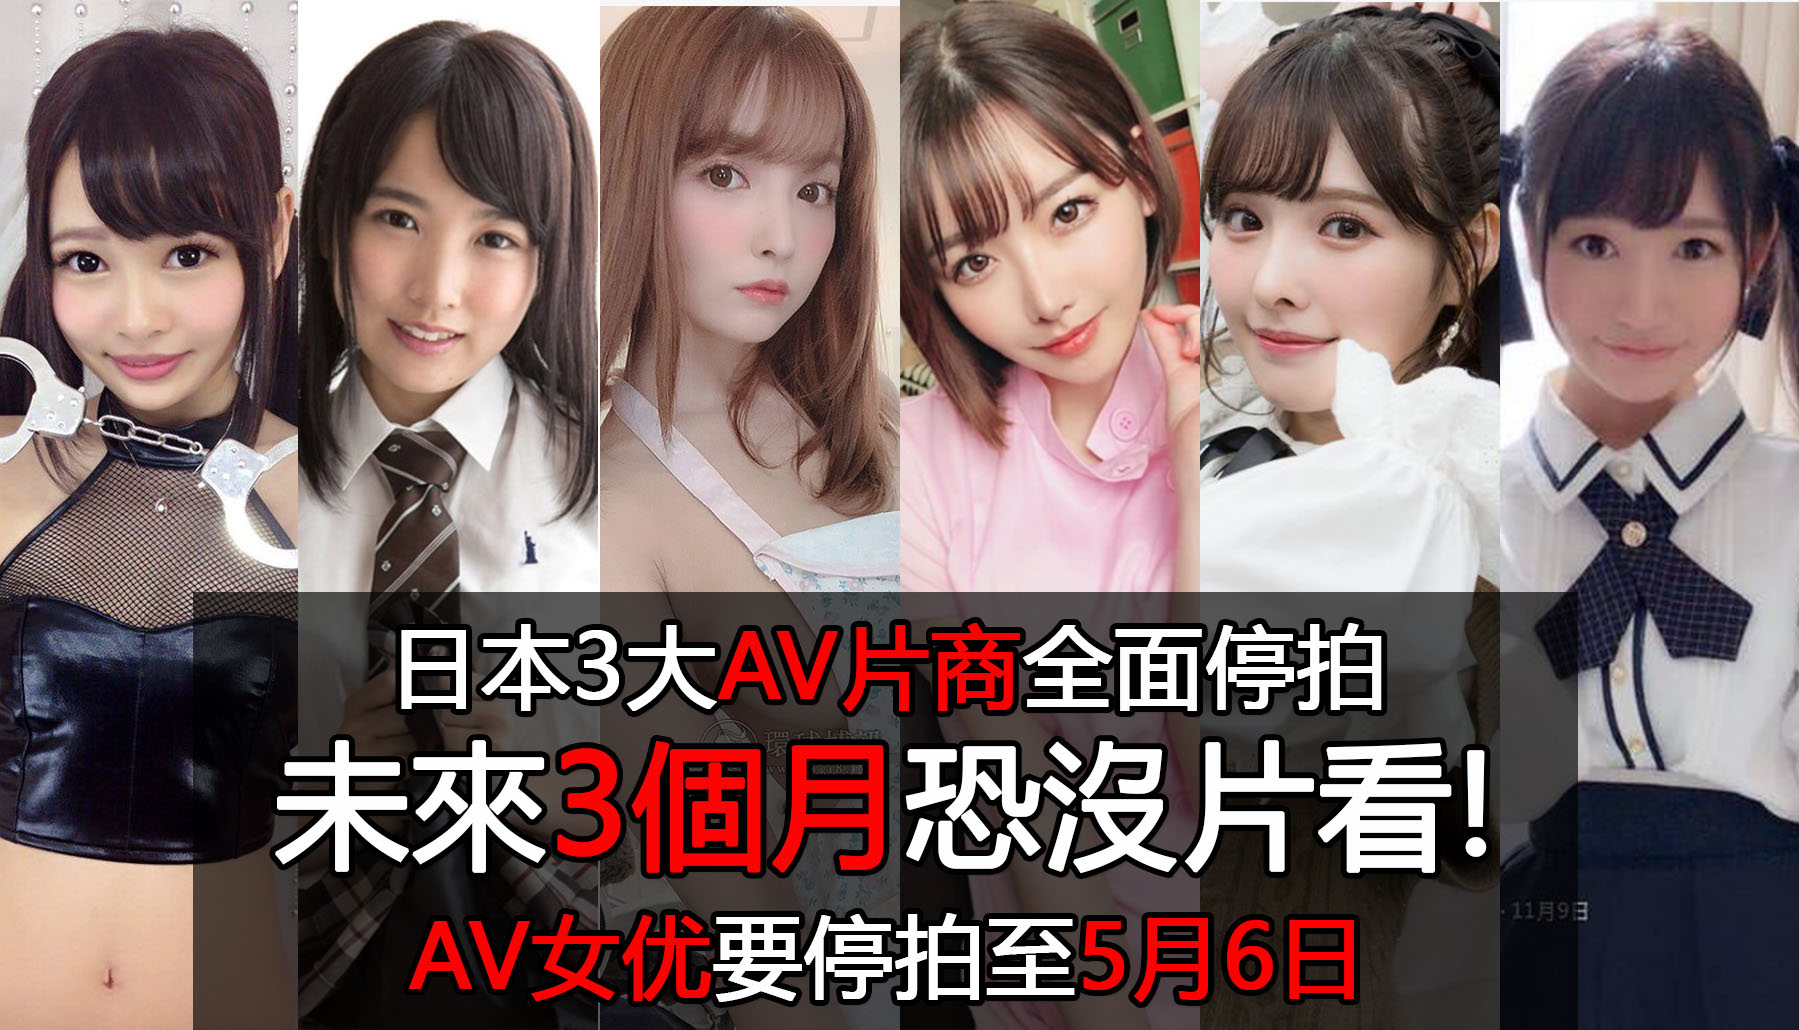 日本3大AV片商全面停拍 未來3個月恐沒片看 AV女优要停拍至5月6日